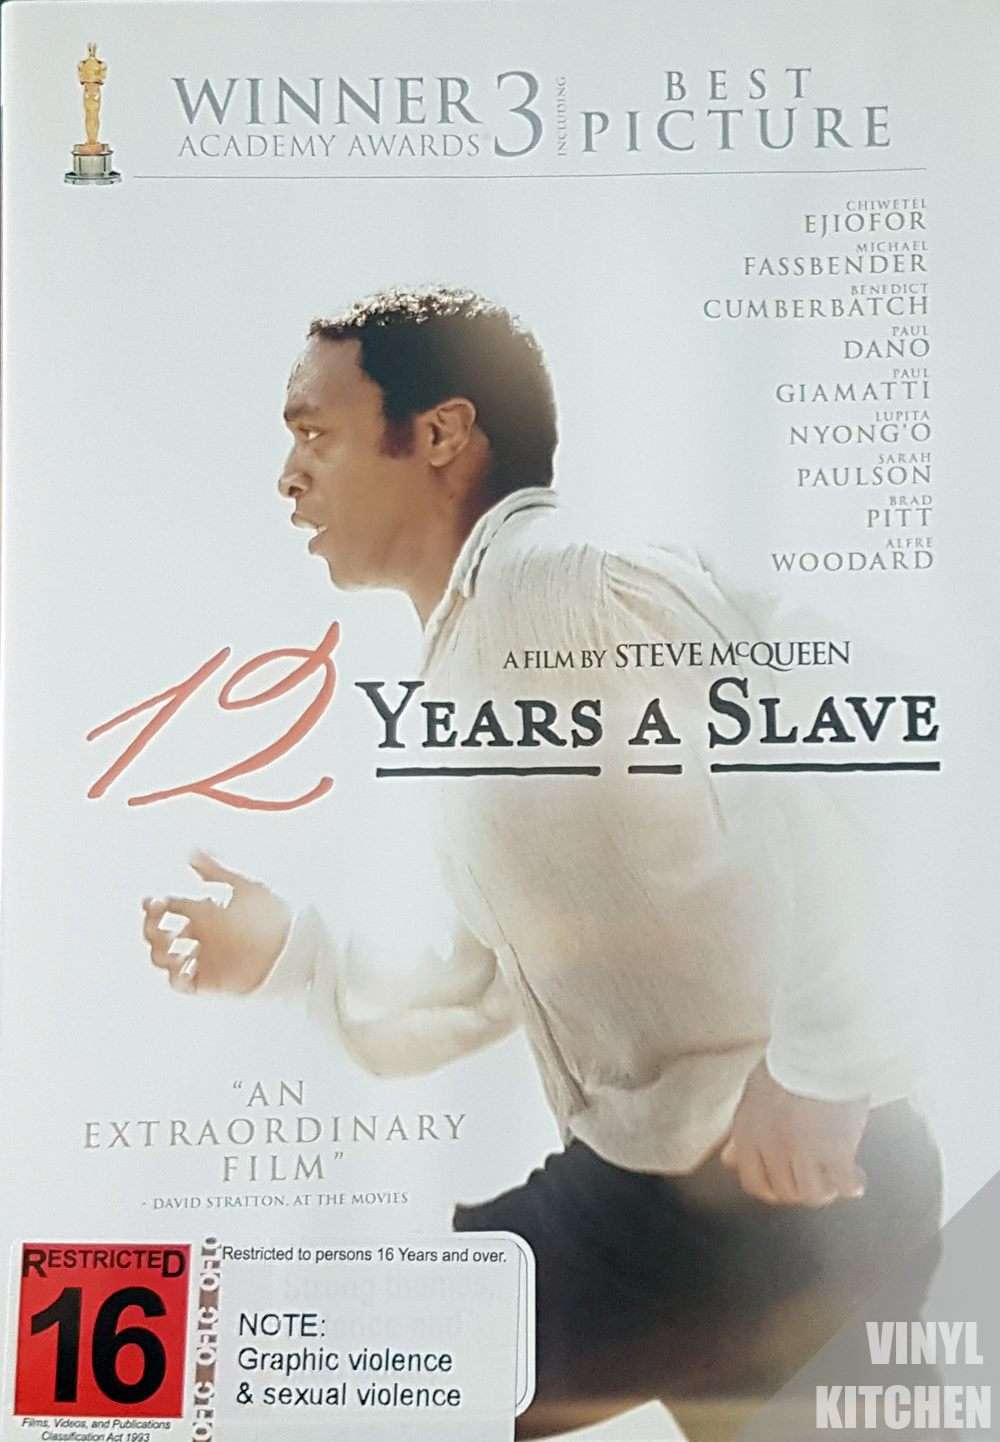 12 Years a Slave - Vinyl Kitchen